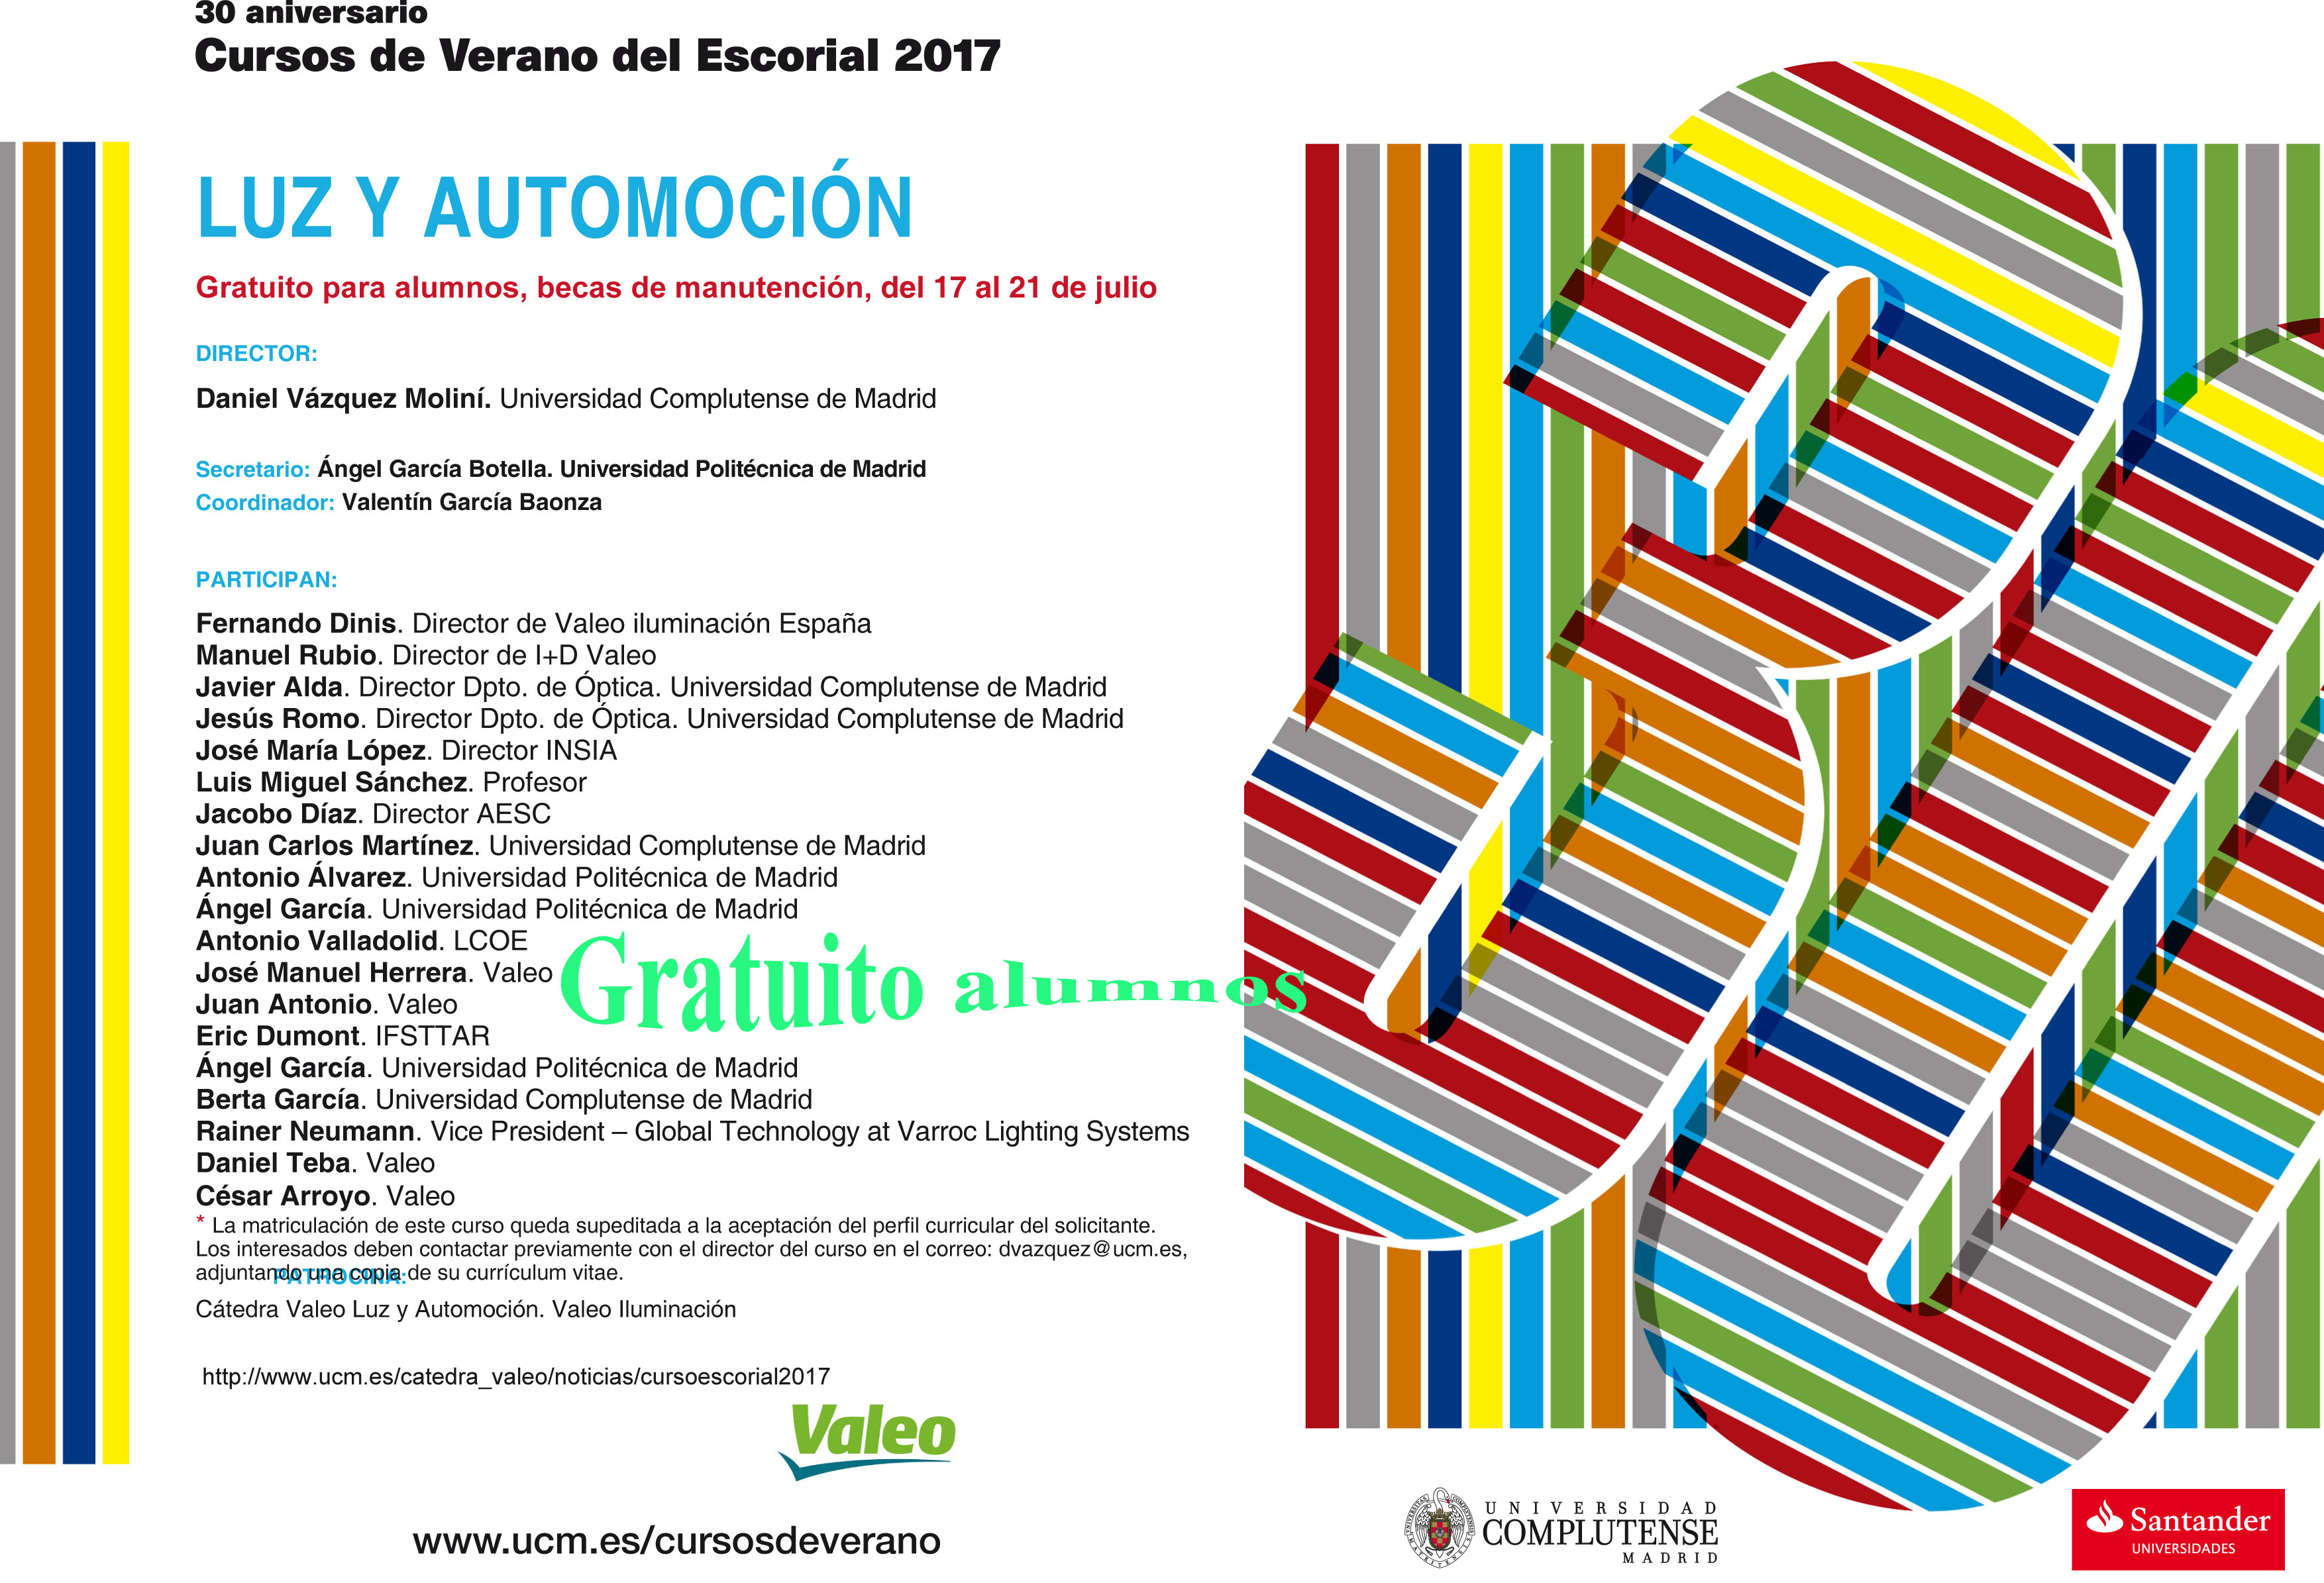 Curso de Verano de El Escorial 2017. "Luz y Automoción"